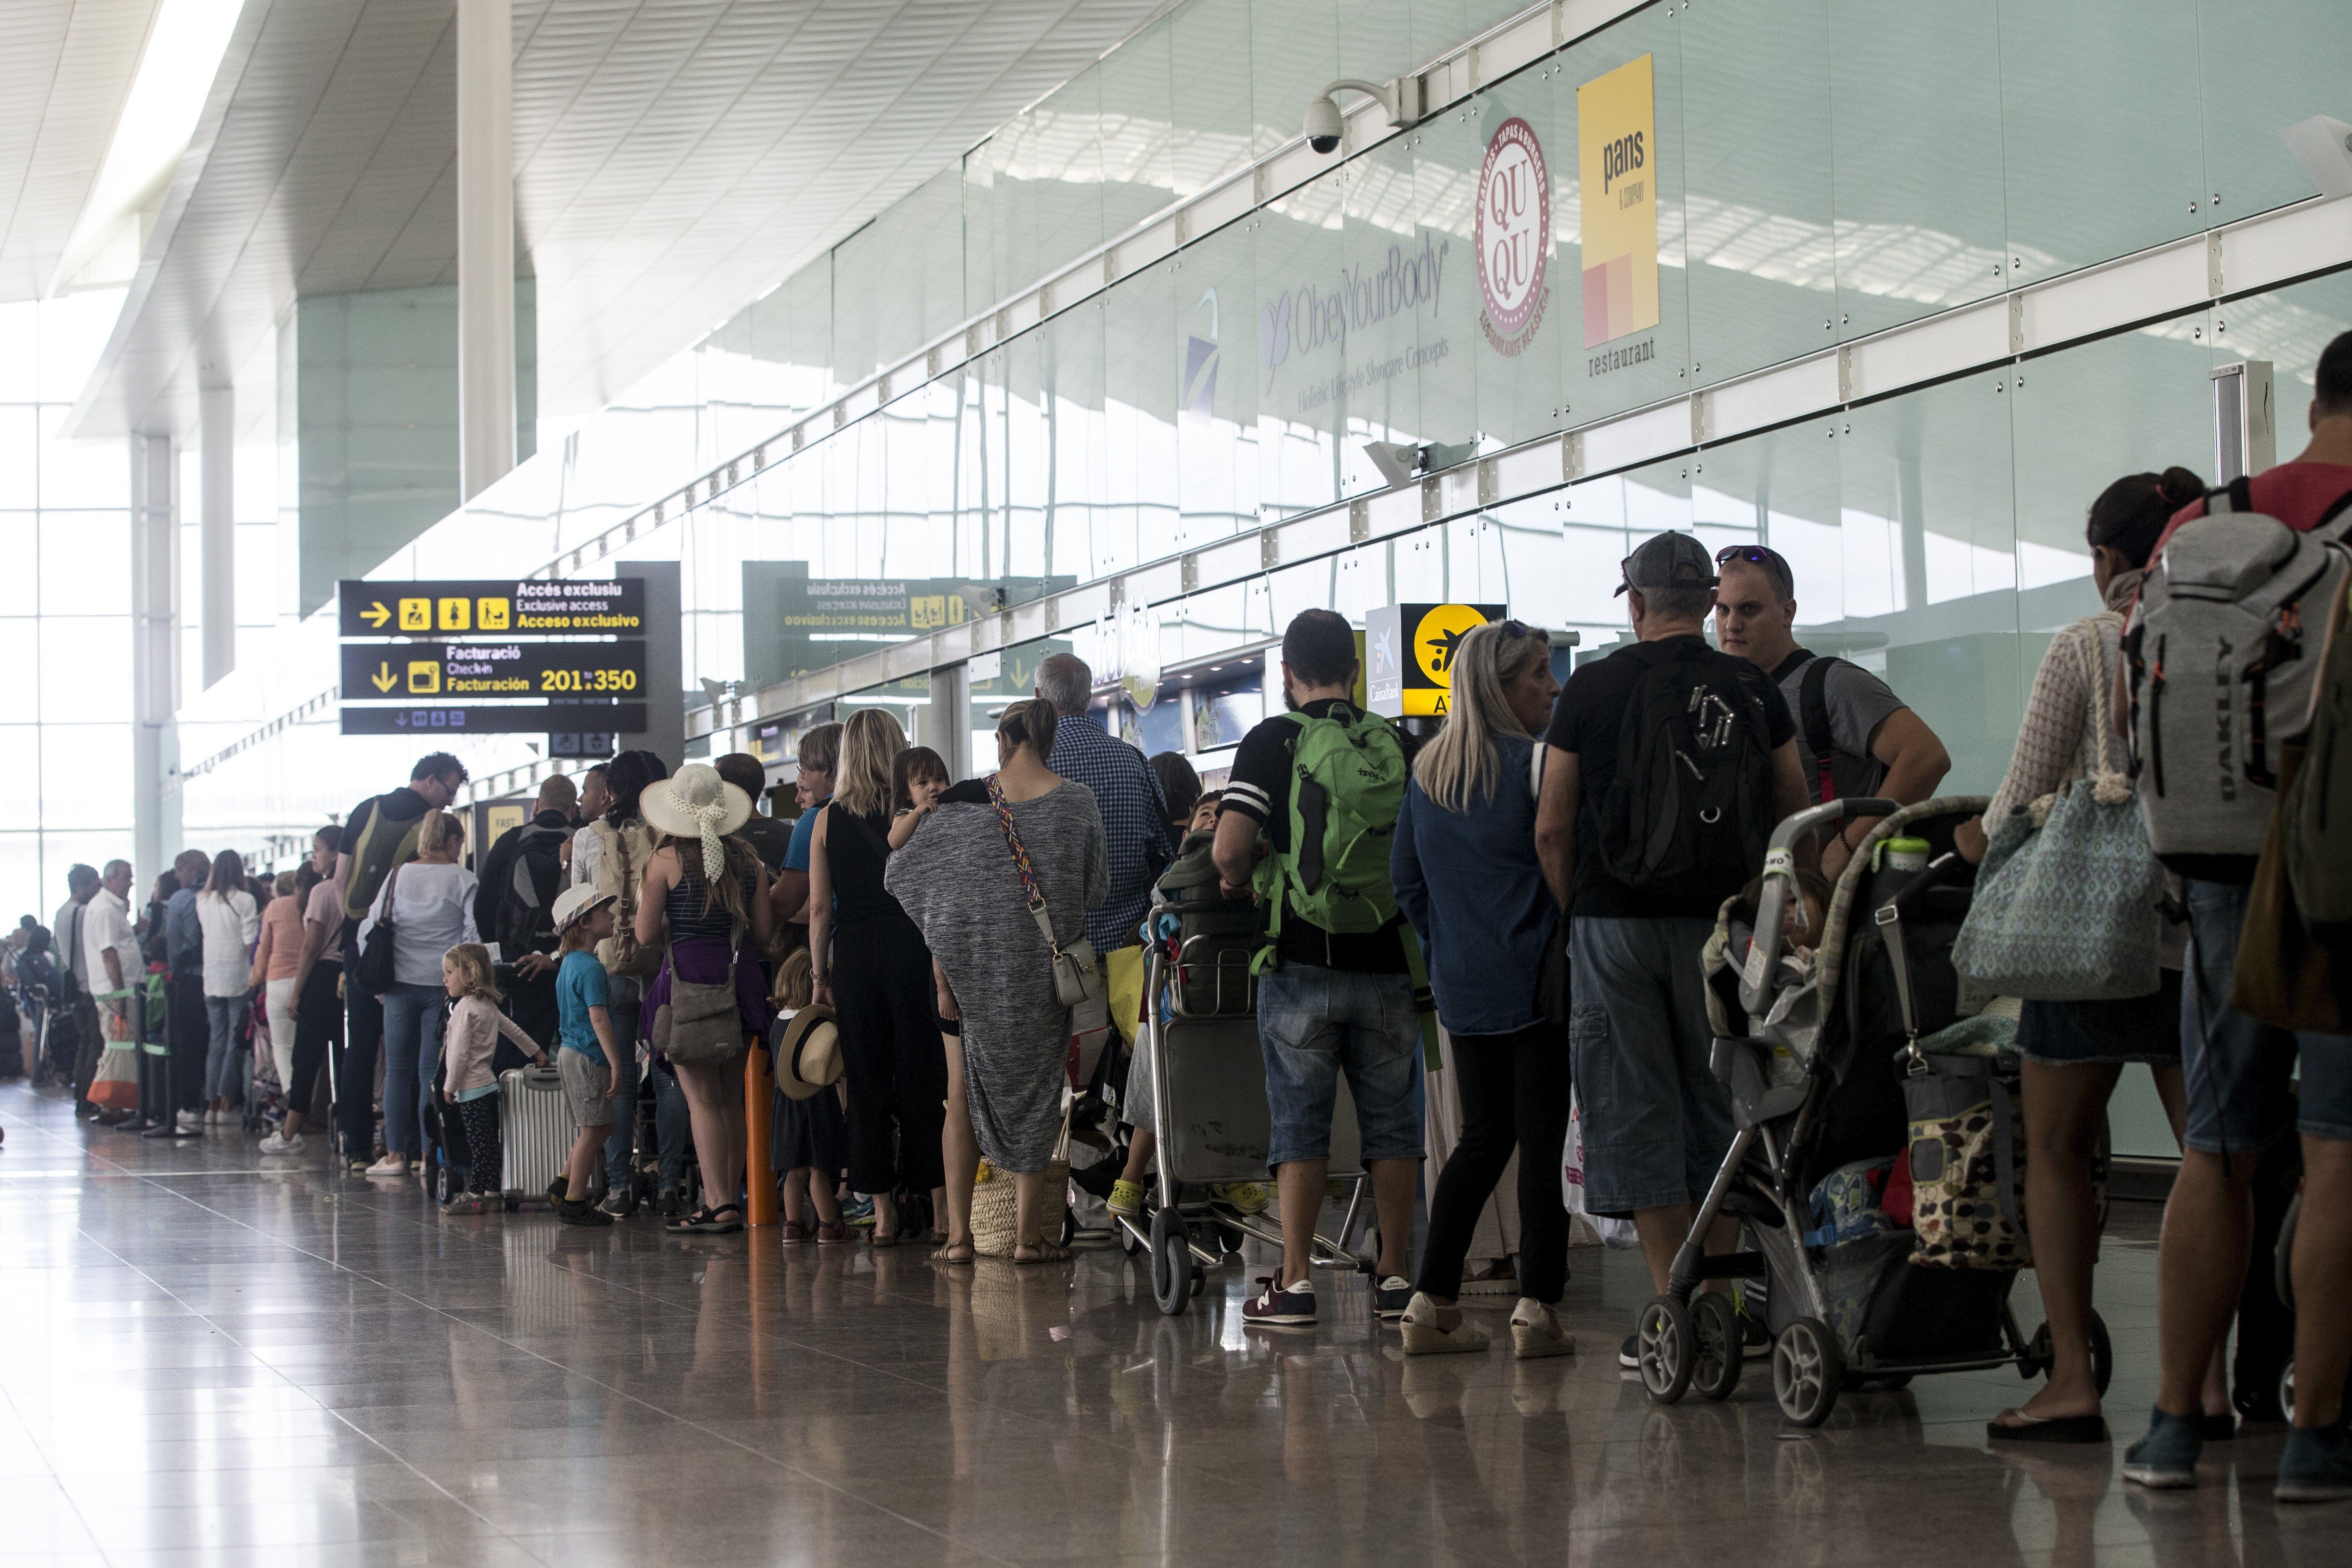 La Guardia Civil recurre a voluntarios “sin titulación aeroportuaria” para enviarlos a El Prat